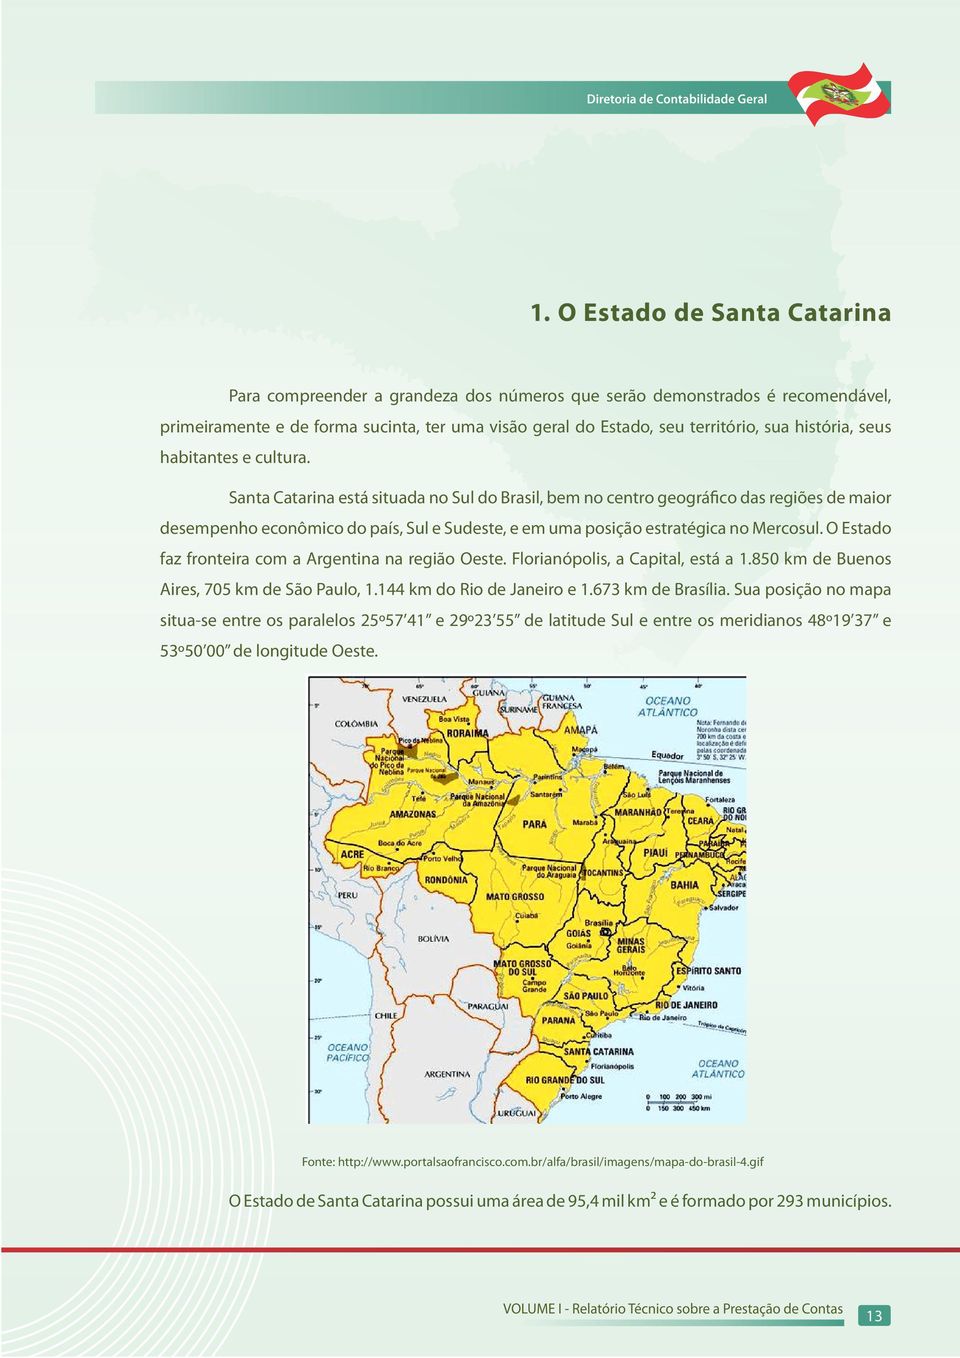 Santa Catarina está situada no Sul do Brasil, bem no centro geográfico das regiões de maior desempenho econômico do país, Sul e Sudeste, e em uma posição estratégica no Mercosul.